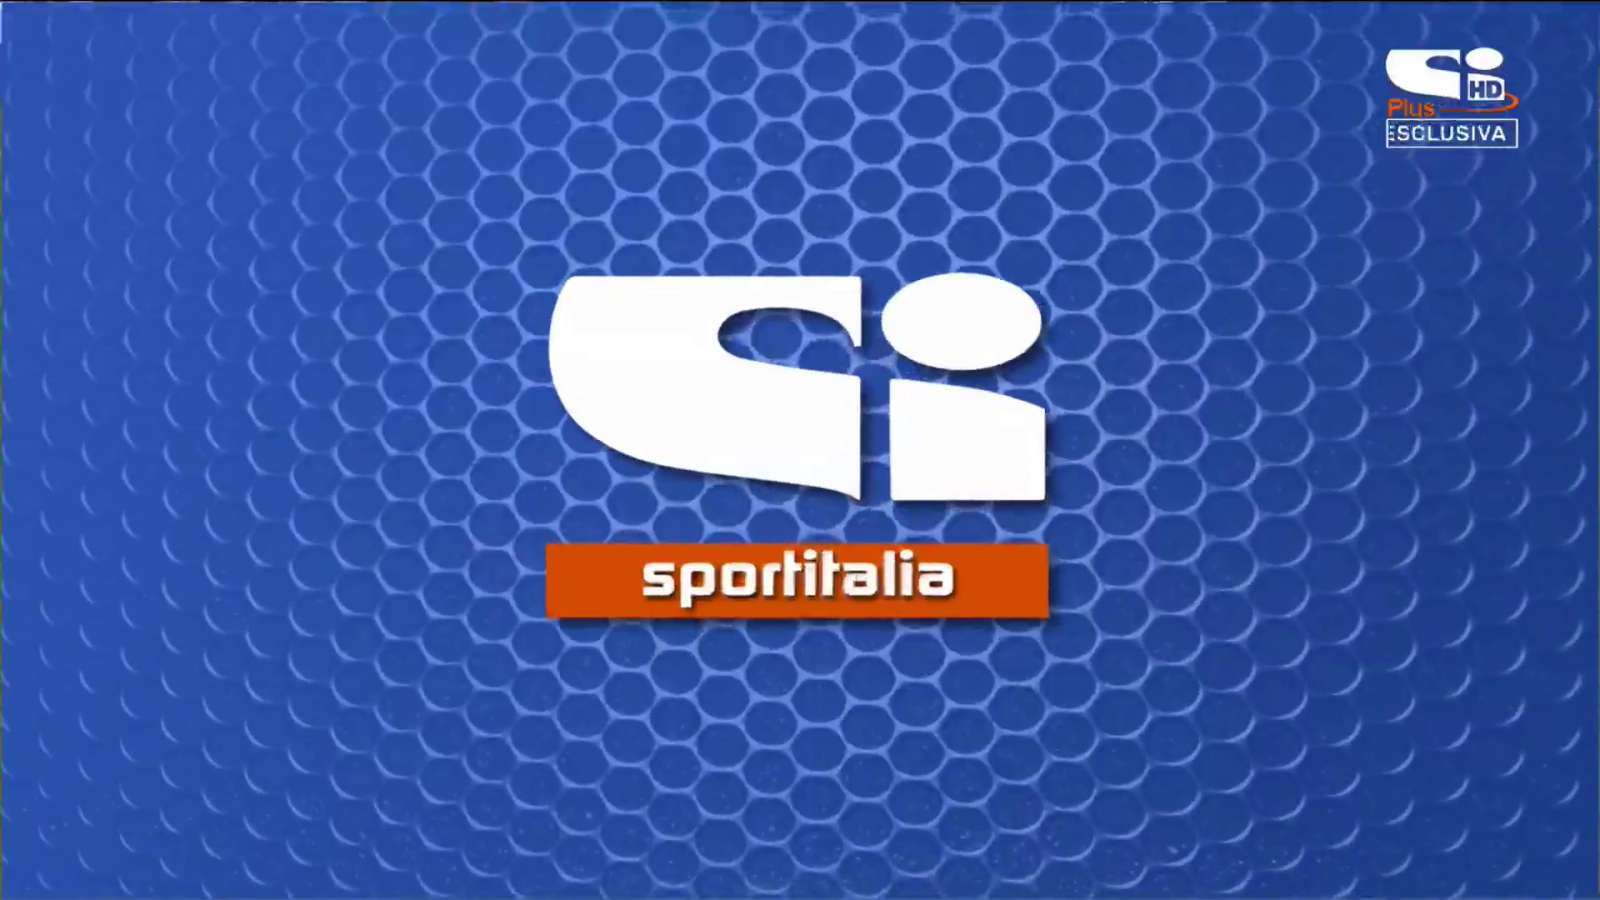 Foto - Sportitalia in HD sul canale 60 del digitale terrestre. SoloCalcio visibile anche su Tiv&ugrave;sat